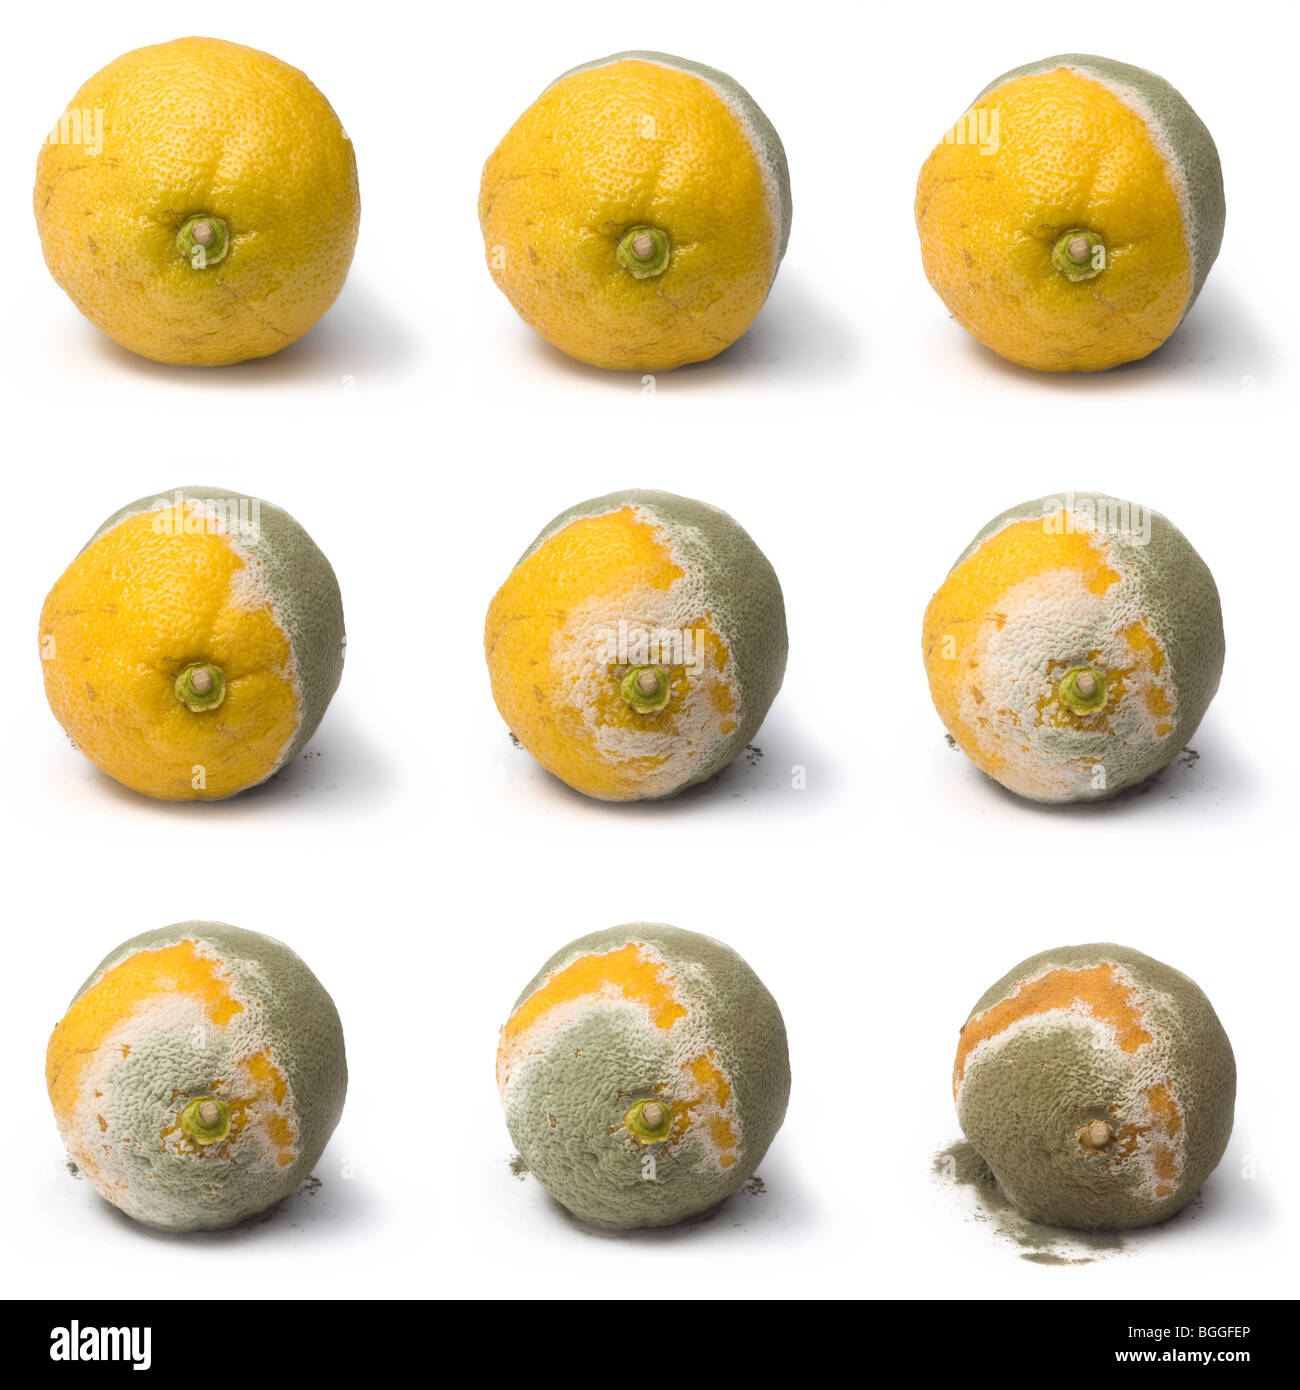 L'occurrence de penicillium moisissure sur une citron (Citrus limon). Moisissure (Penicillium sp) attaquant un citron. Banque D'Images